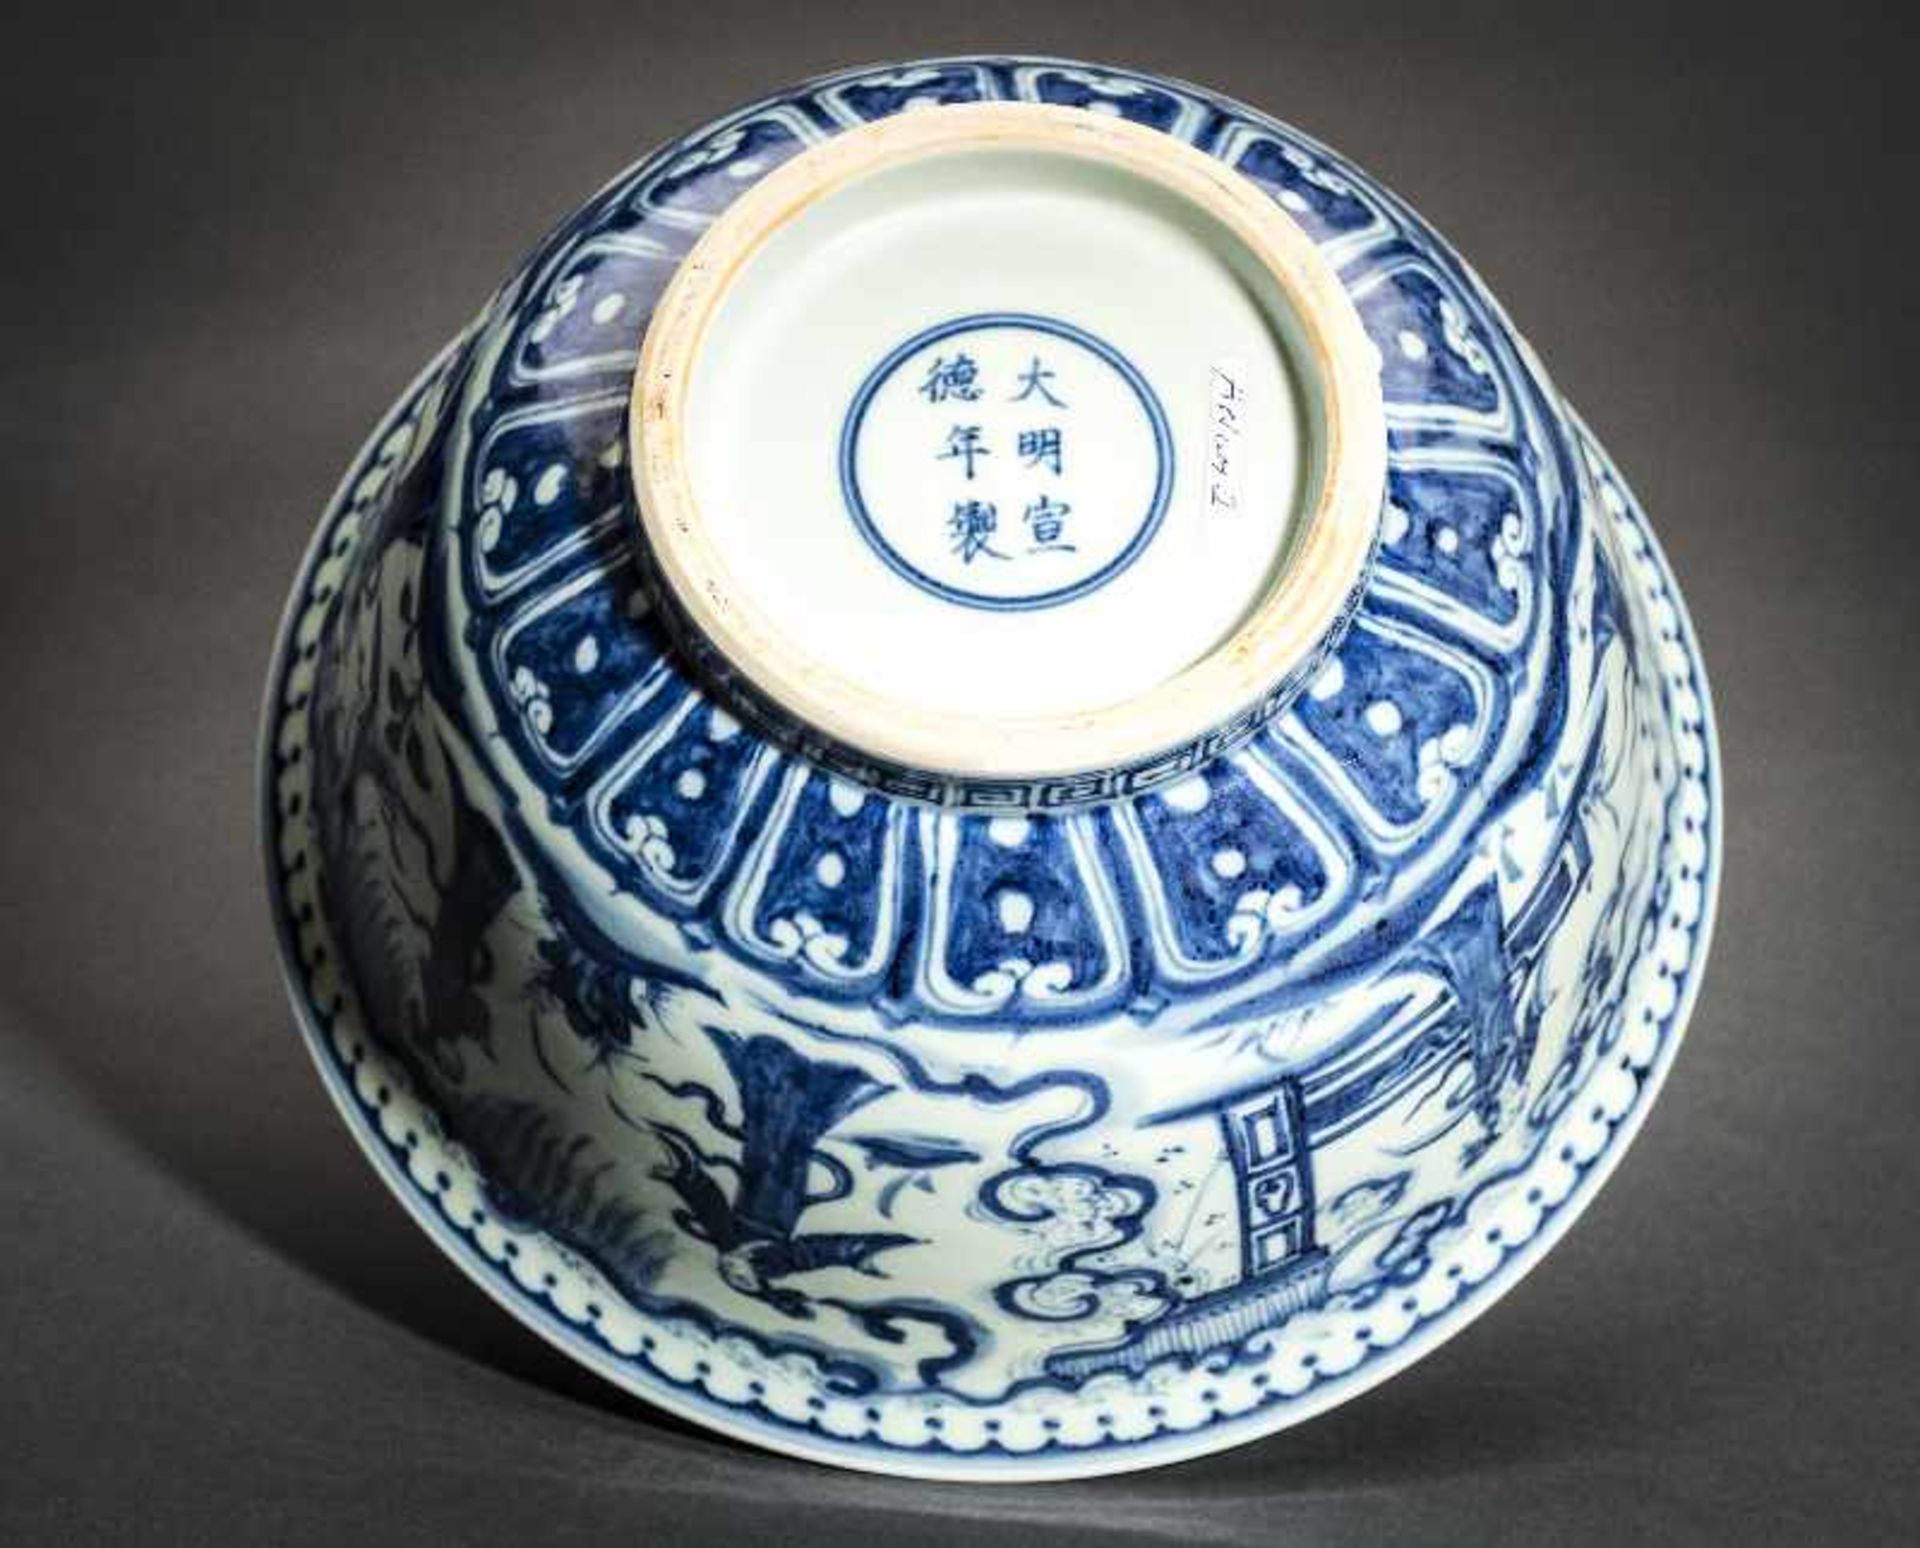 TIEFE SCHALE MIT FEEN UND UNSTERBLICHEN Blauweißes Porzellan. China, Die im Stil der Ming-Zeit - Image 5 of 5